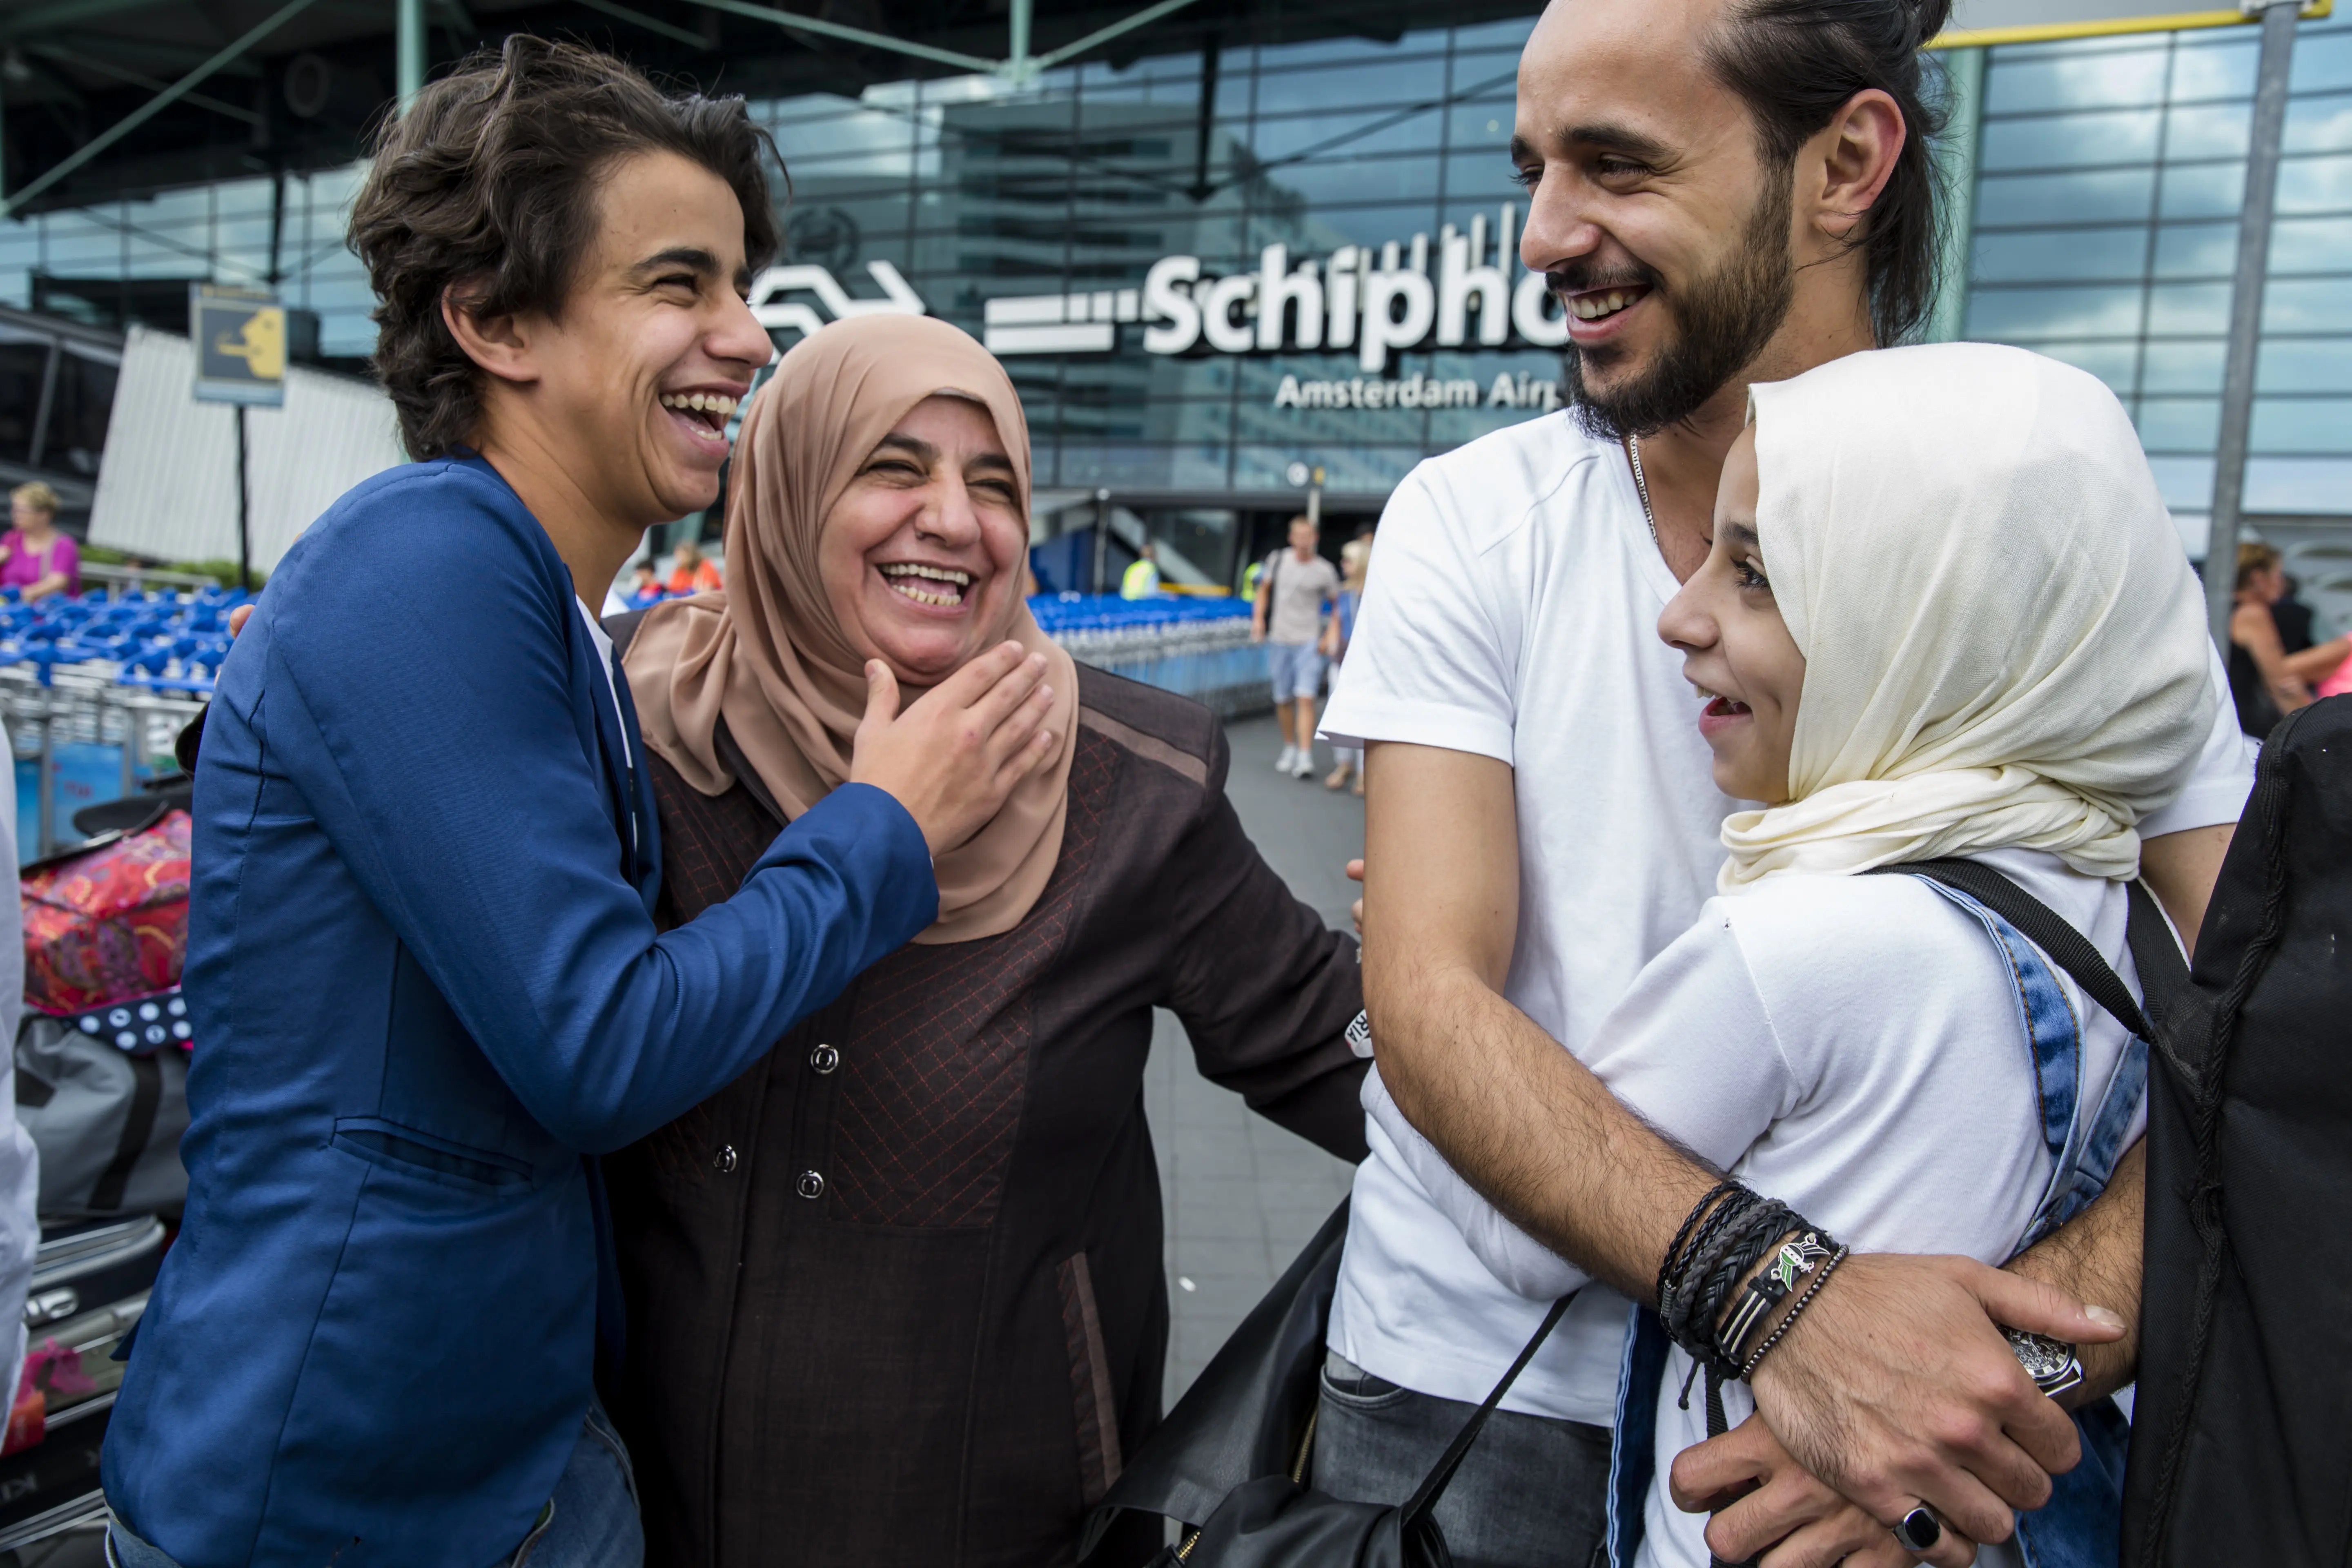 الحاق به خانواده در میدان هوایی "اسخیپول" Schiphol